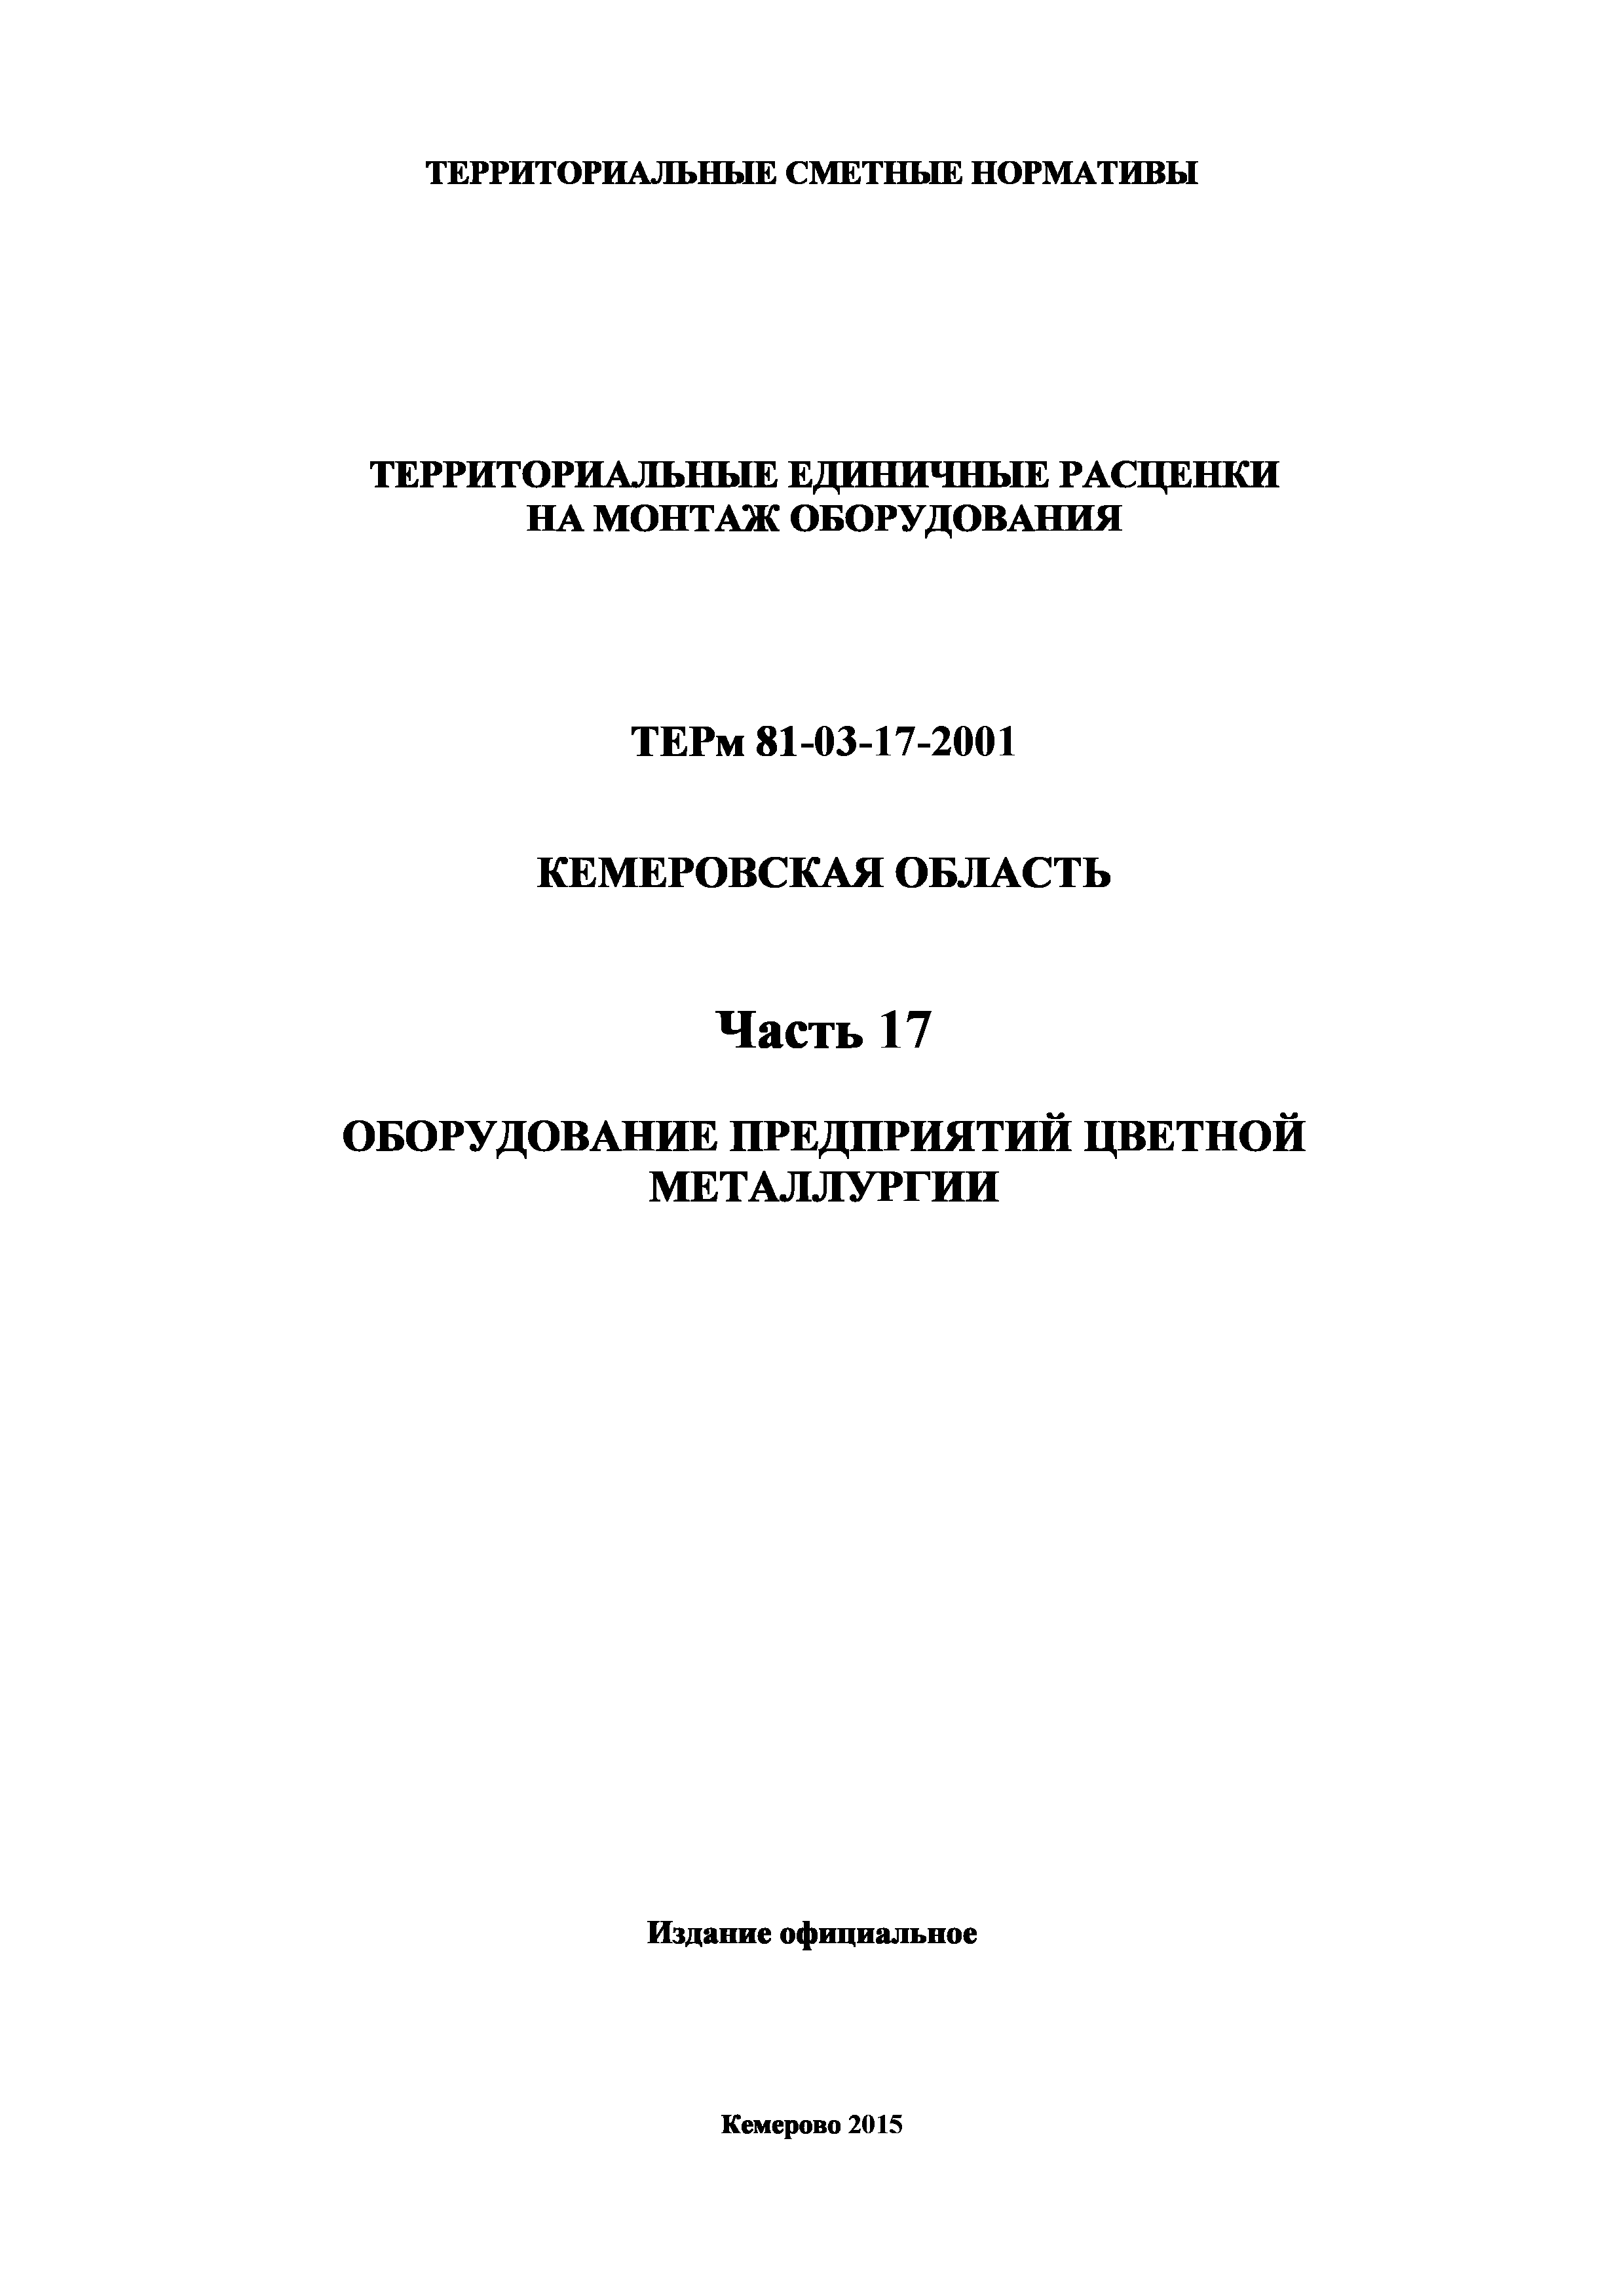 ТЕРм Кемеровская область 81-03-17-2001